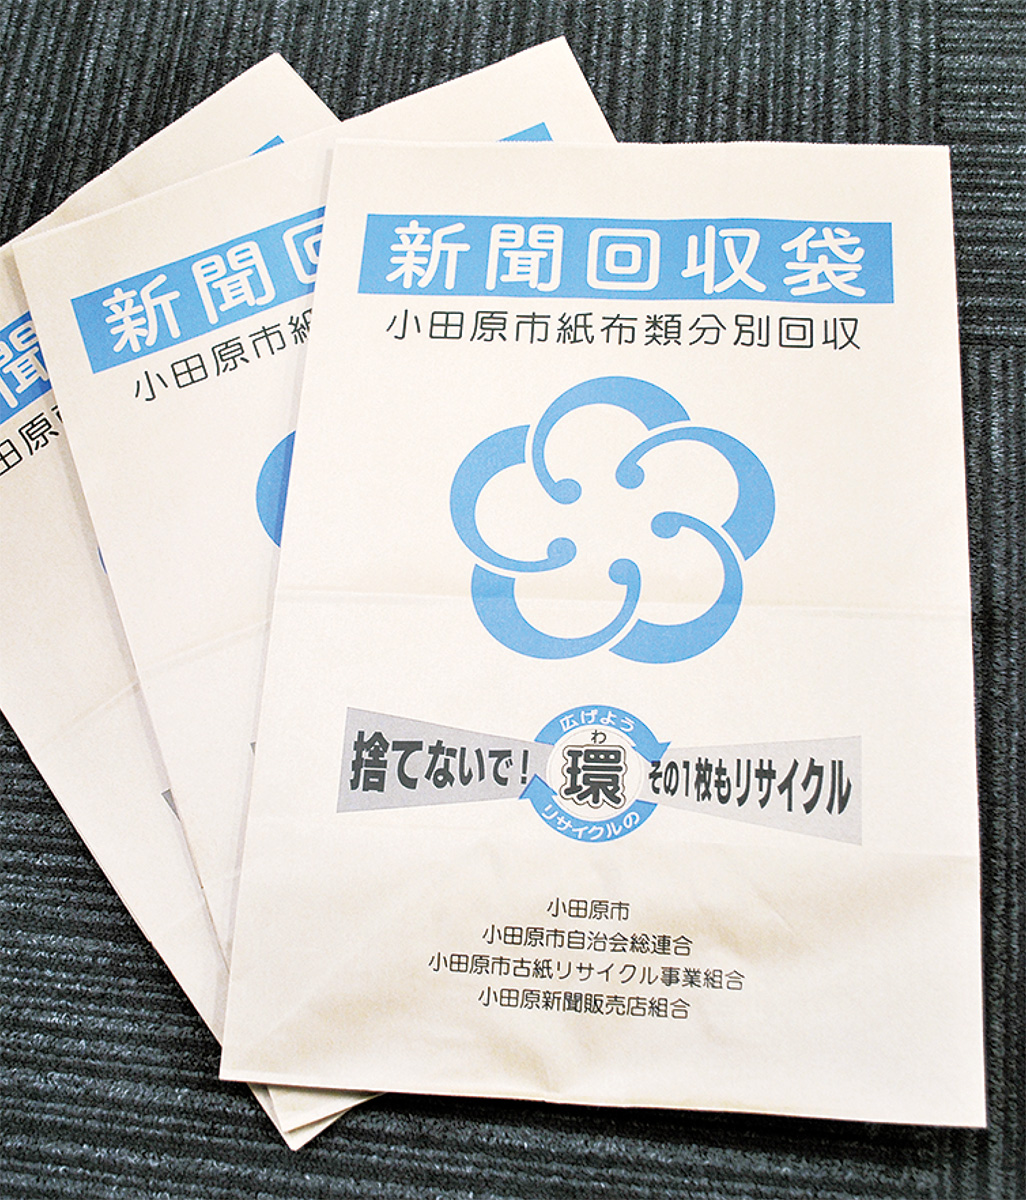 小田原市 古紙リサイクルに一手 新聞回収袋を製作 小田原 箱根 湯河原 真鶴 タウンニュース